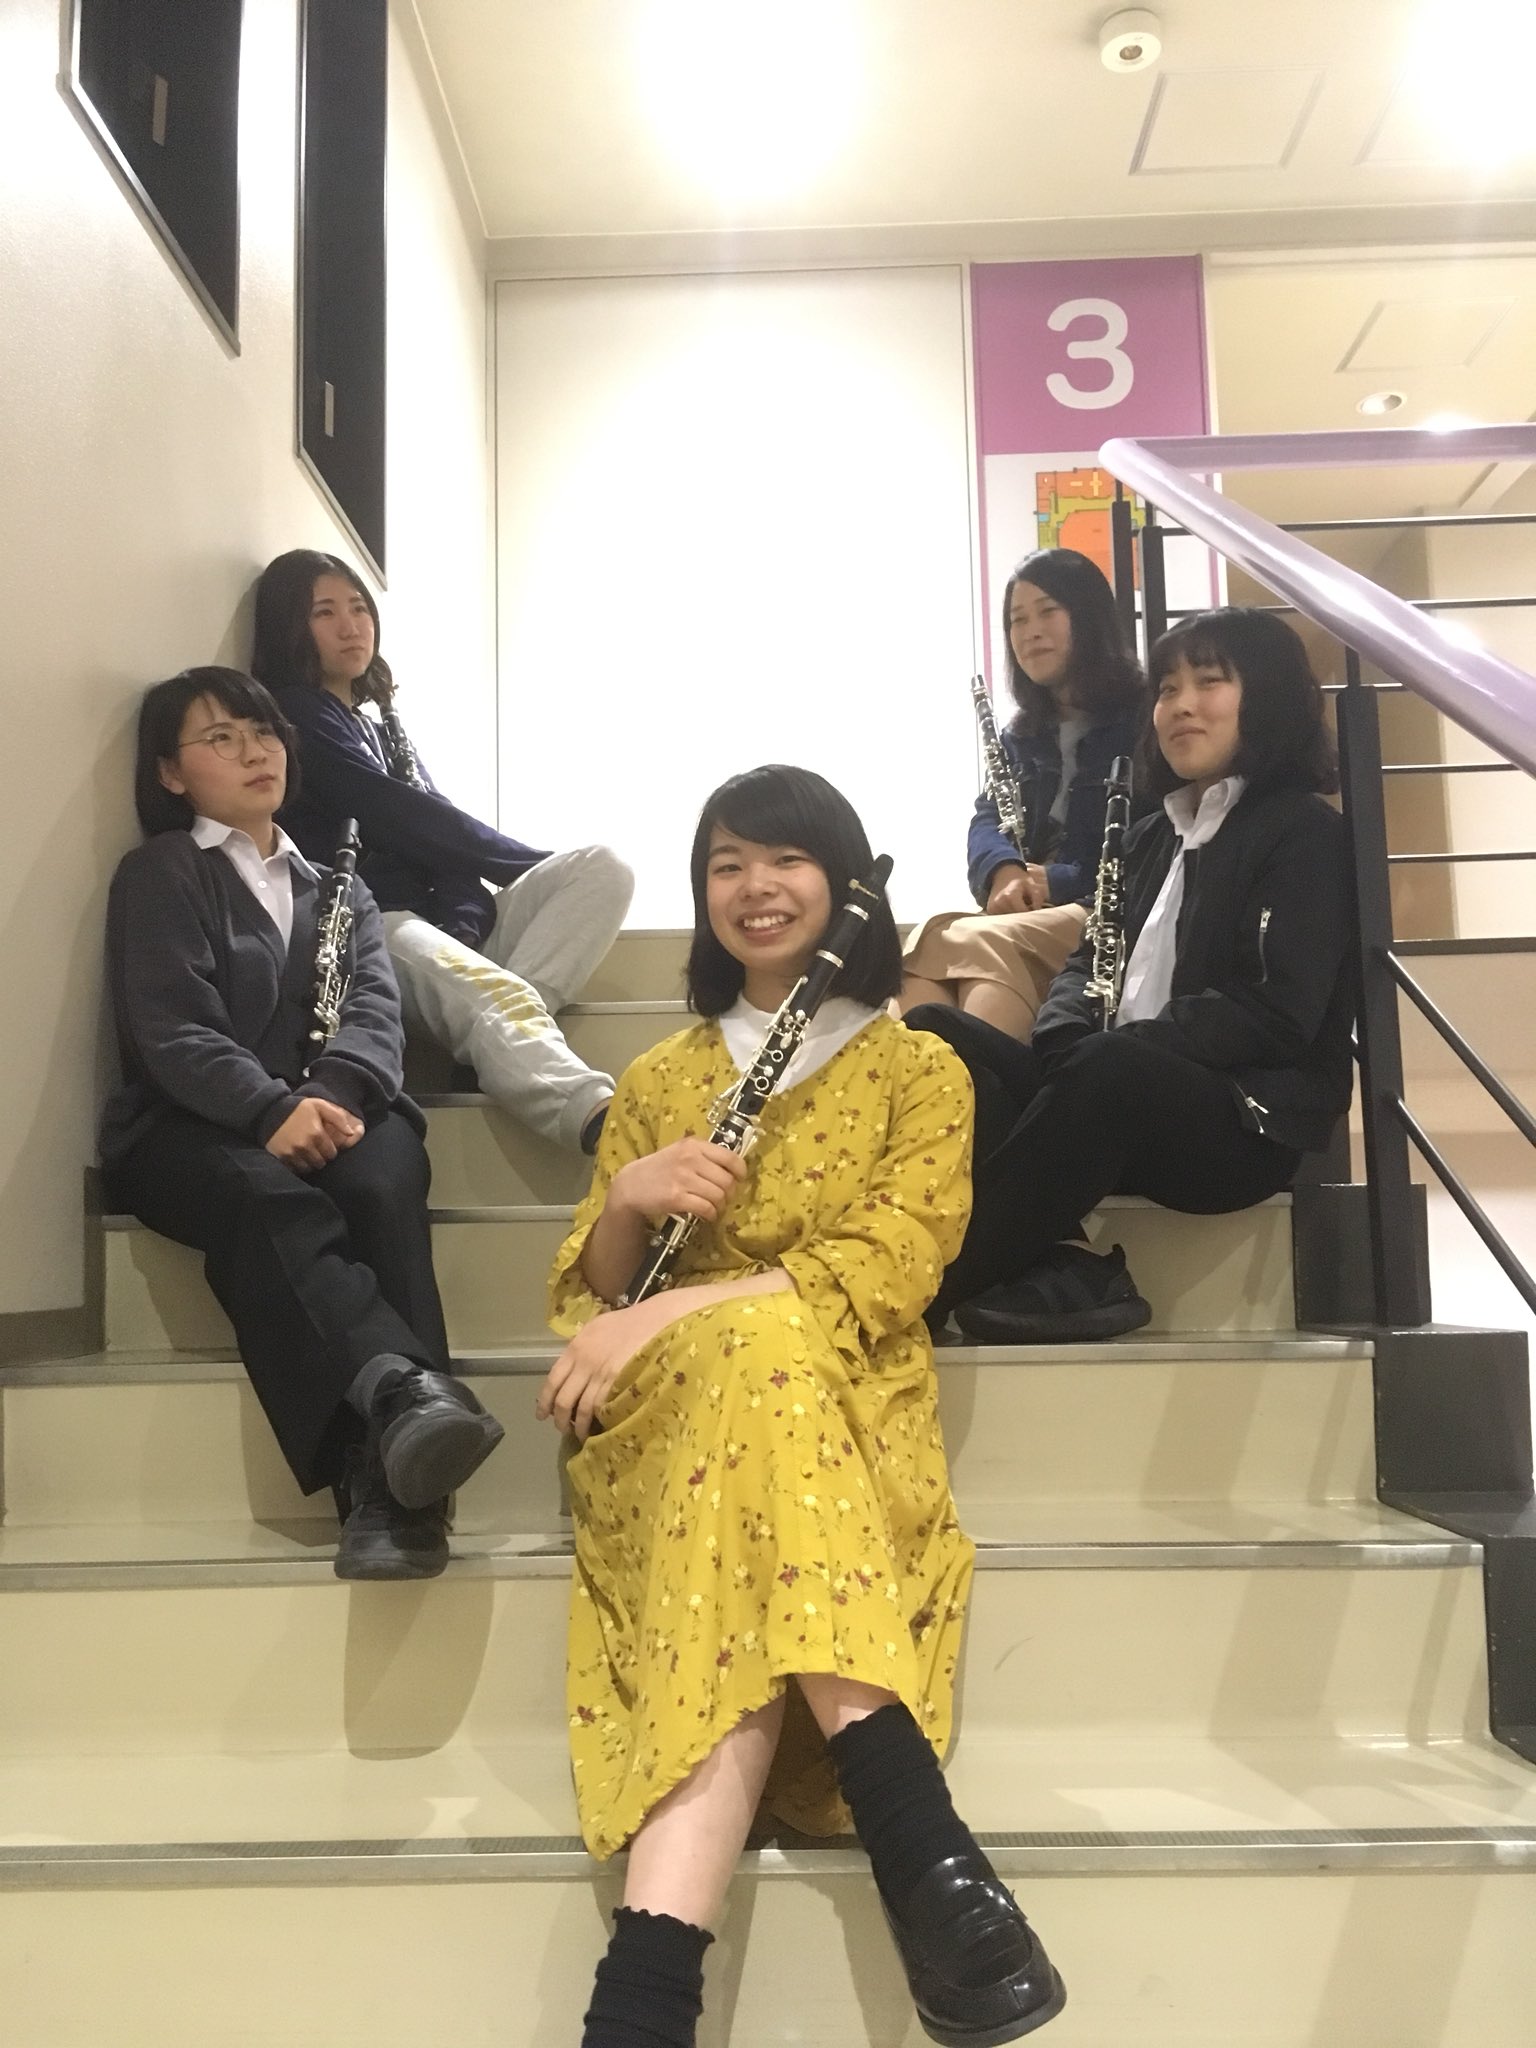 Twitter 上的 京都橘大学吹奏楽部 今日のパート紹介はクラリネットです ど も クラリネットパートです 人数が1番必要なクラリネットですが 現在5人しかいません ぜひ 私たちと一緒にクラリネットを吹いてみませんか そしてあなたも入部して